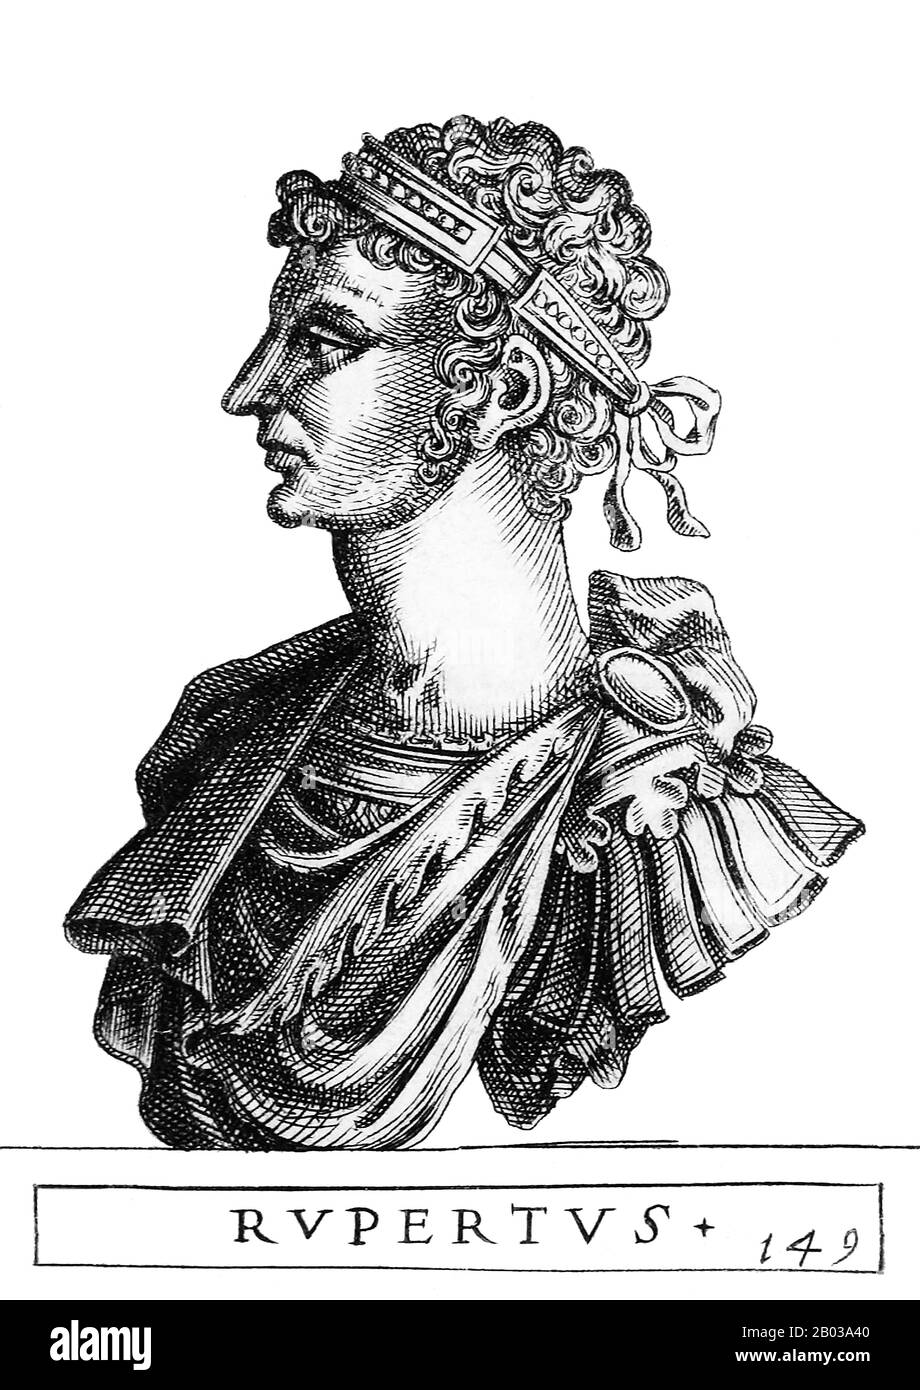 Rupert (1352-1410), noto anche come Rupert del Palatinato e Rupert Il Gentle, era figlio di Elettore Palatino Rupert II e lontano parente dell'imperatore Luigi IV Succedette a suo padre come Elettore Palatino nel 1398, e fu dichiarato re di Germania nel 1400 dai suoi compagni principe-elettori, deponendo re Venceslao. Rupert non aveva una solida base di potere all'interno del Sacro Romano Impero, la sua regola contesa dalla Casa di Lussemburgo, la casa di re Venceslao, che rifiutò di riconoscere il suo disgoverno ma non prese alcuna azione diretta contro Rupert. Marciò in Italia nel 1401, sperando di essere incoronato Sacro Romano Foto Stock